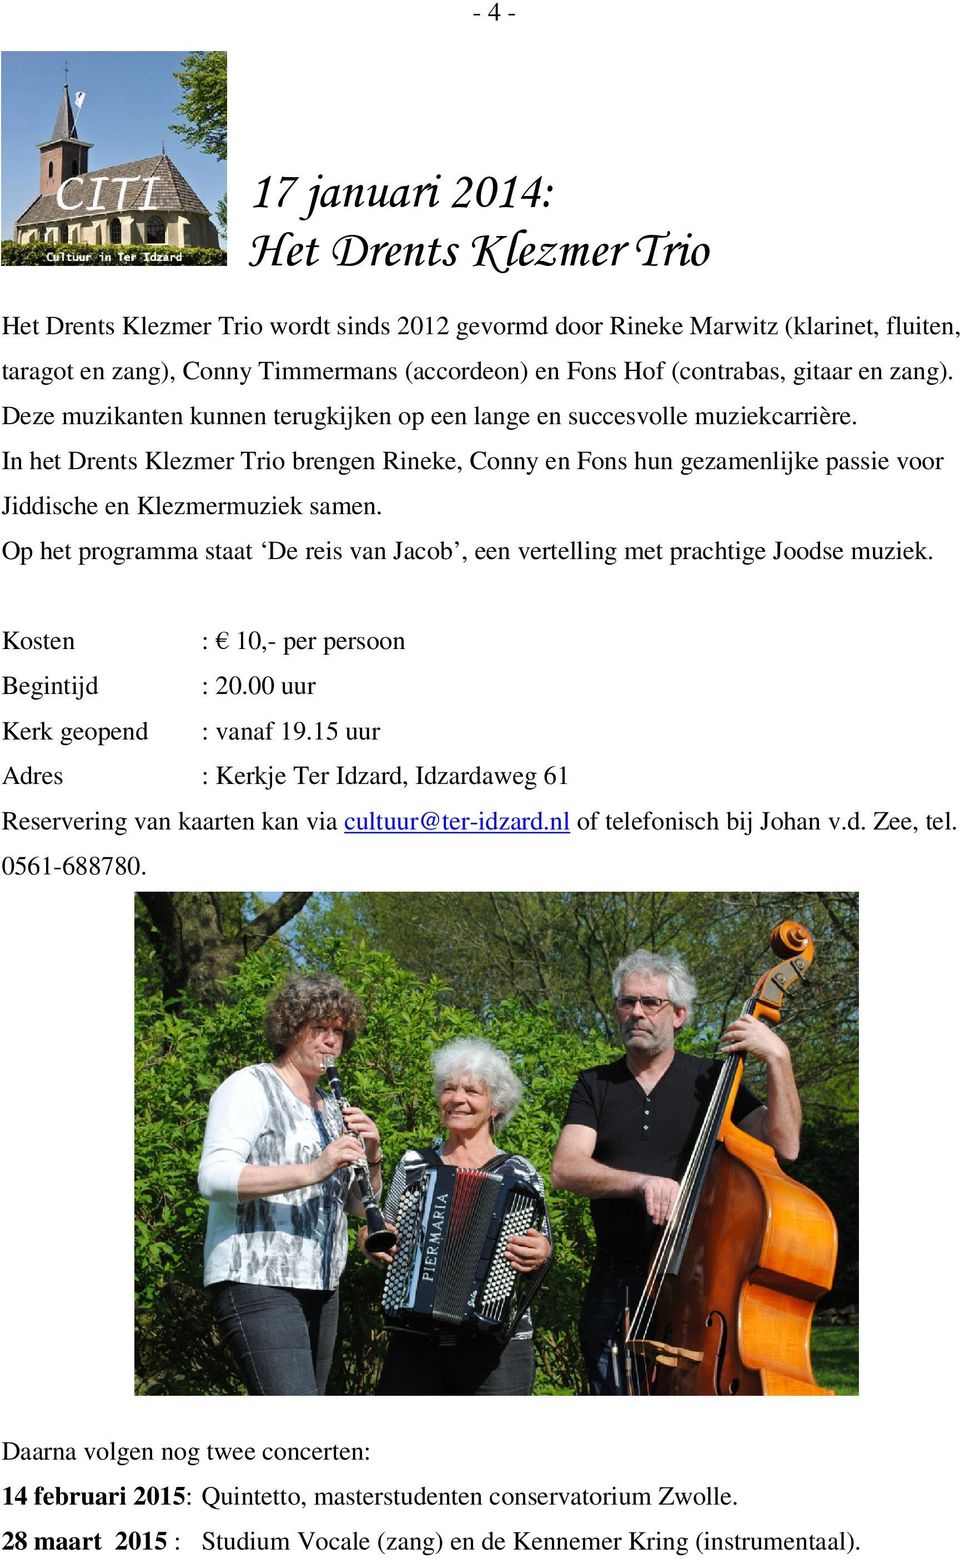 In het Drents Klezmer Trio brengen Rineke, Conny en Fons hun gezamenlijke passie voor Jiddische en Klezmermuziek samen.